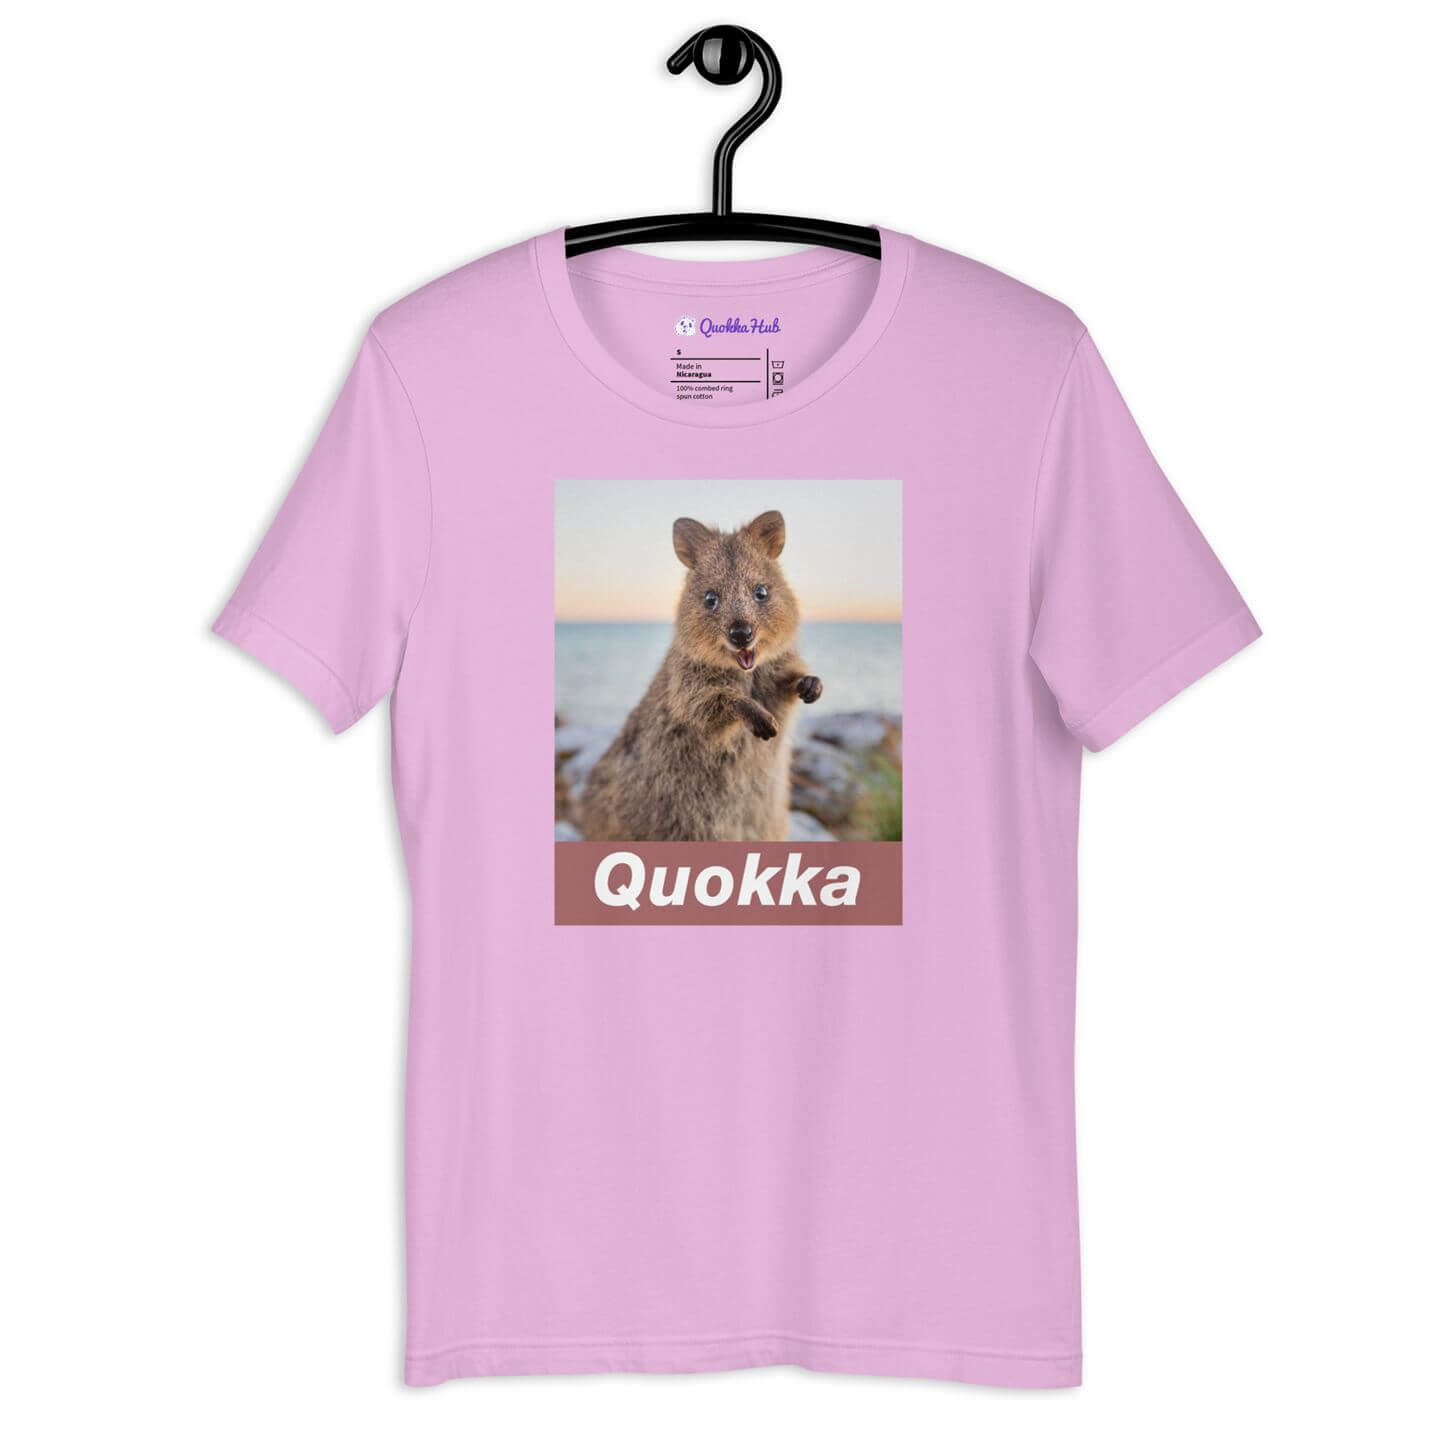 Quokka T-shirt - Sunrise - Crew Neck (unisex)